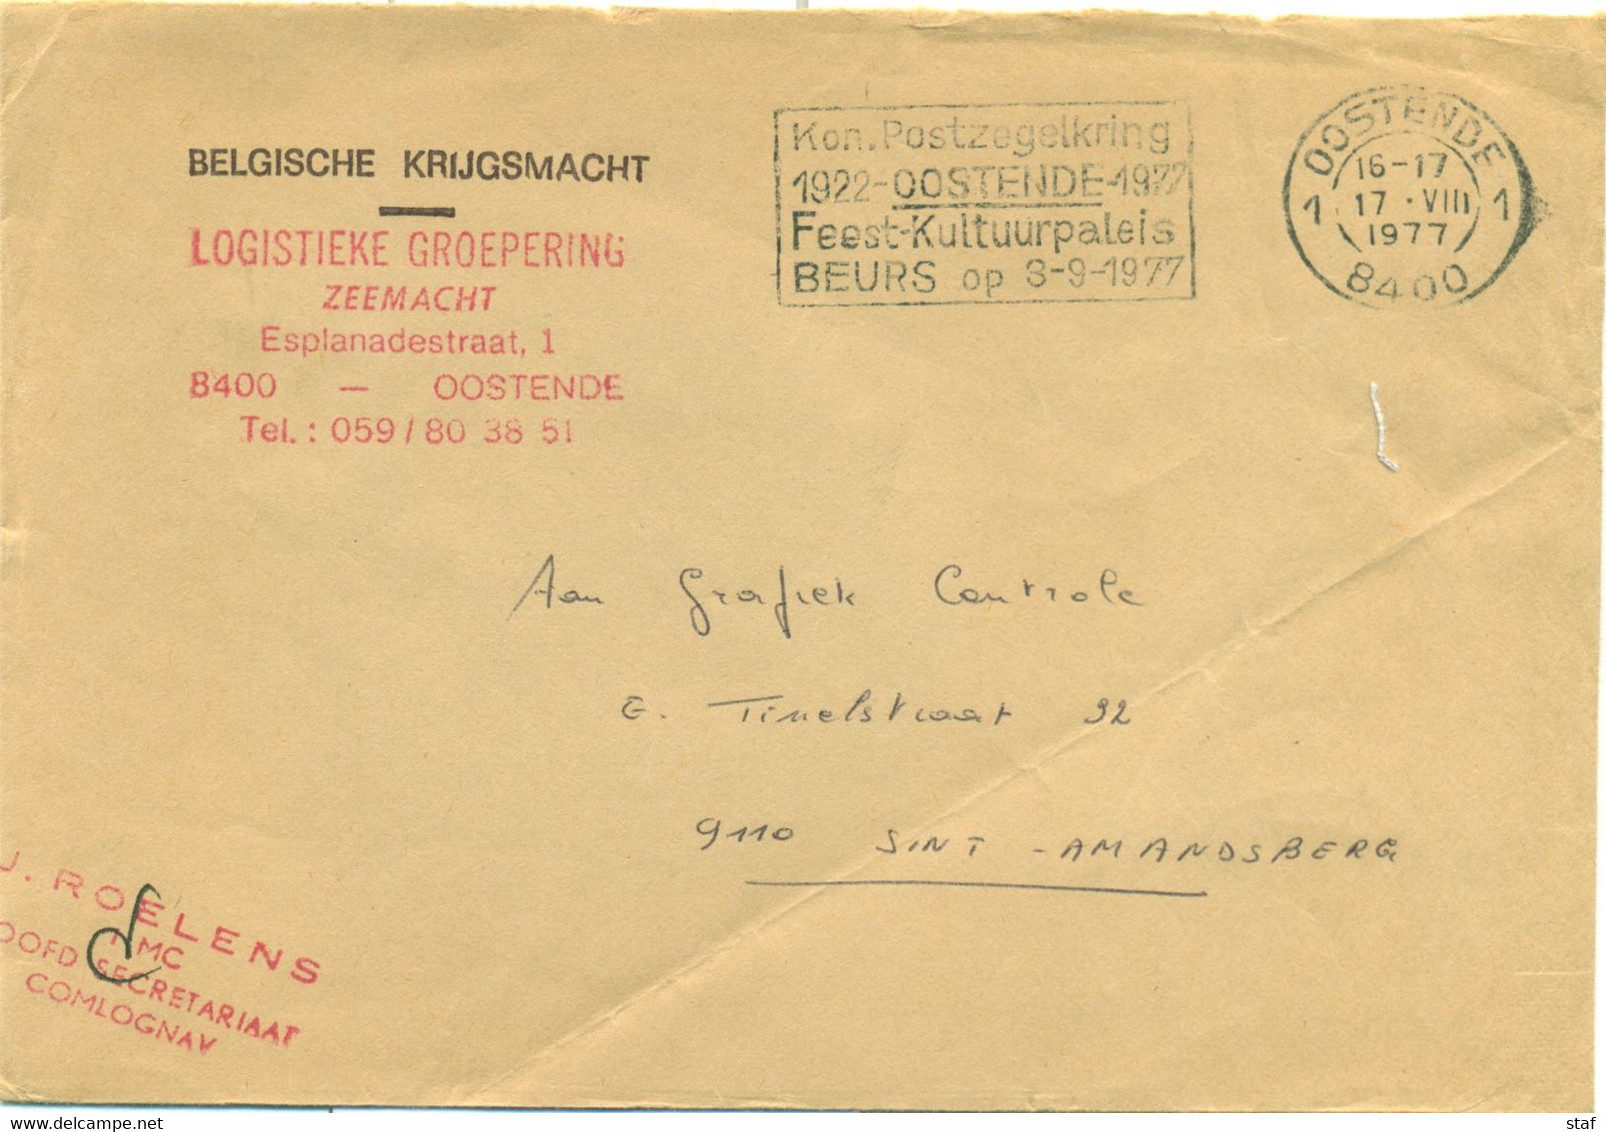 Kon. Postzegelkring Oostende 1922 - 1977 Feest-Kultuurpaleis Beurs Op 3-9-1977 - Flammes